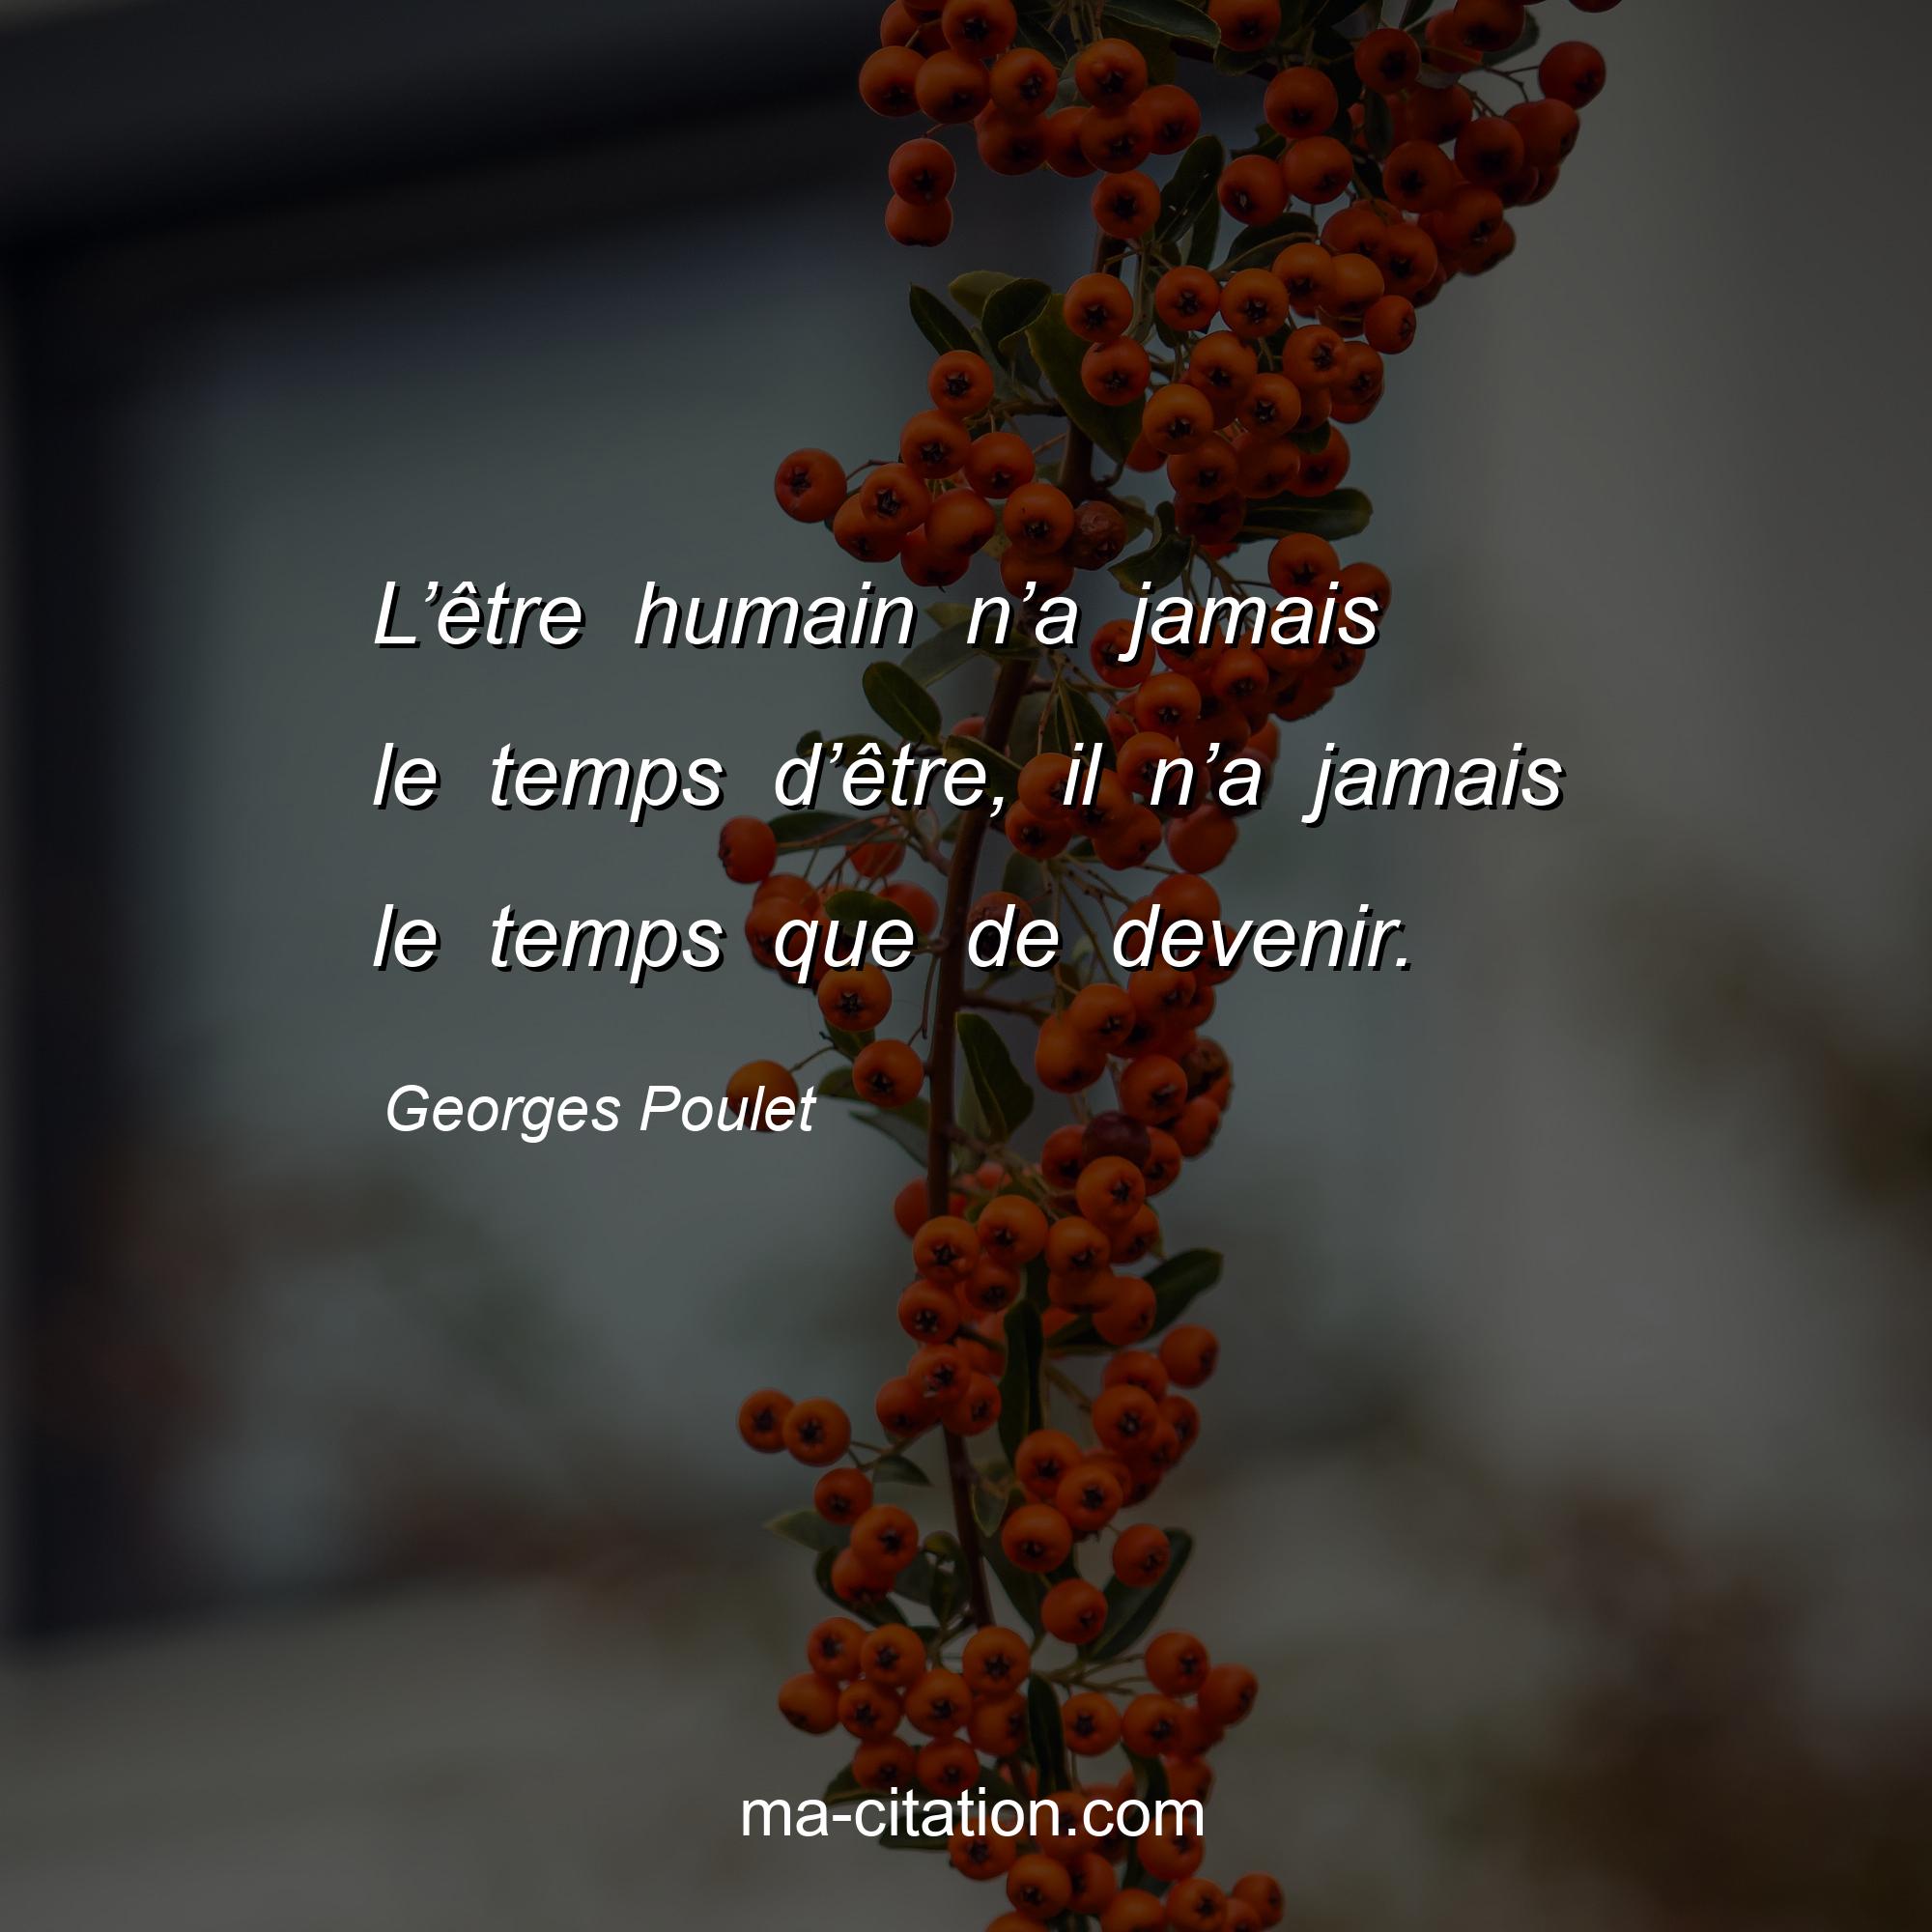 Georges Poulet : L’être humain n’a jamais le temps d’être, il n’a jamais le temps que de devenir.